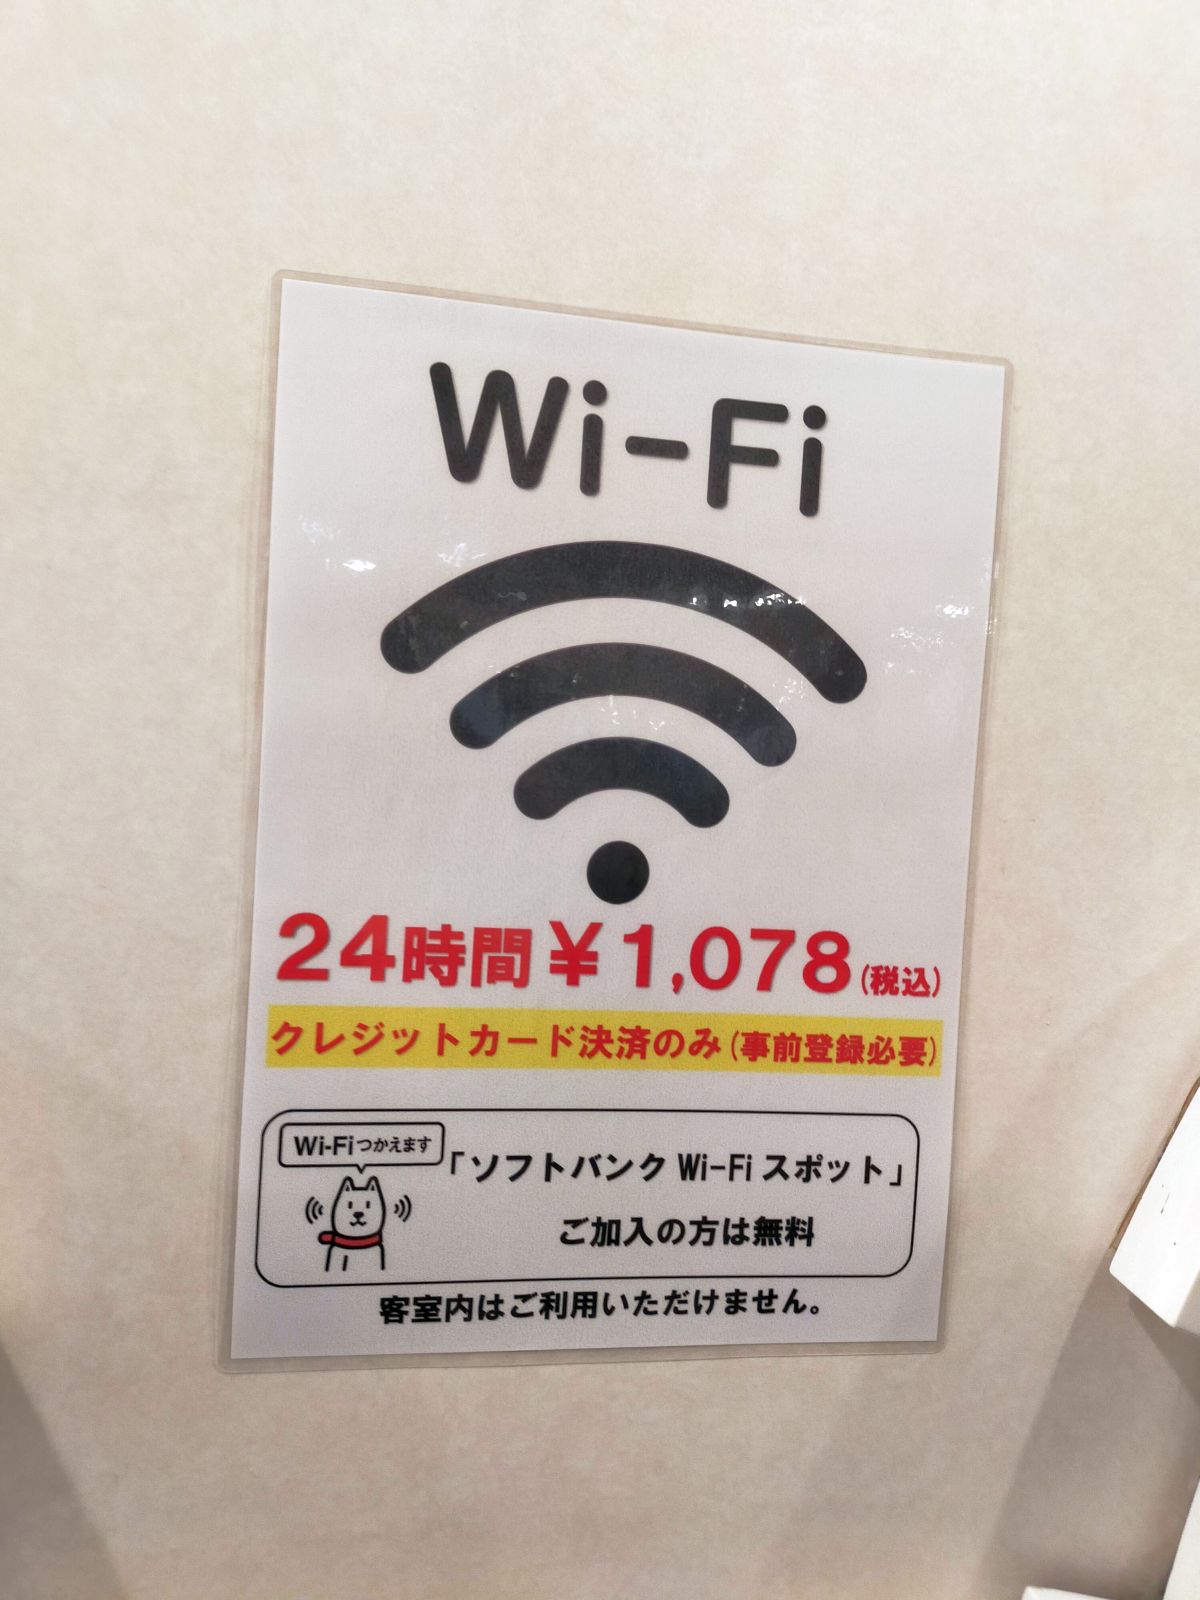 船内Wi-Fi